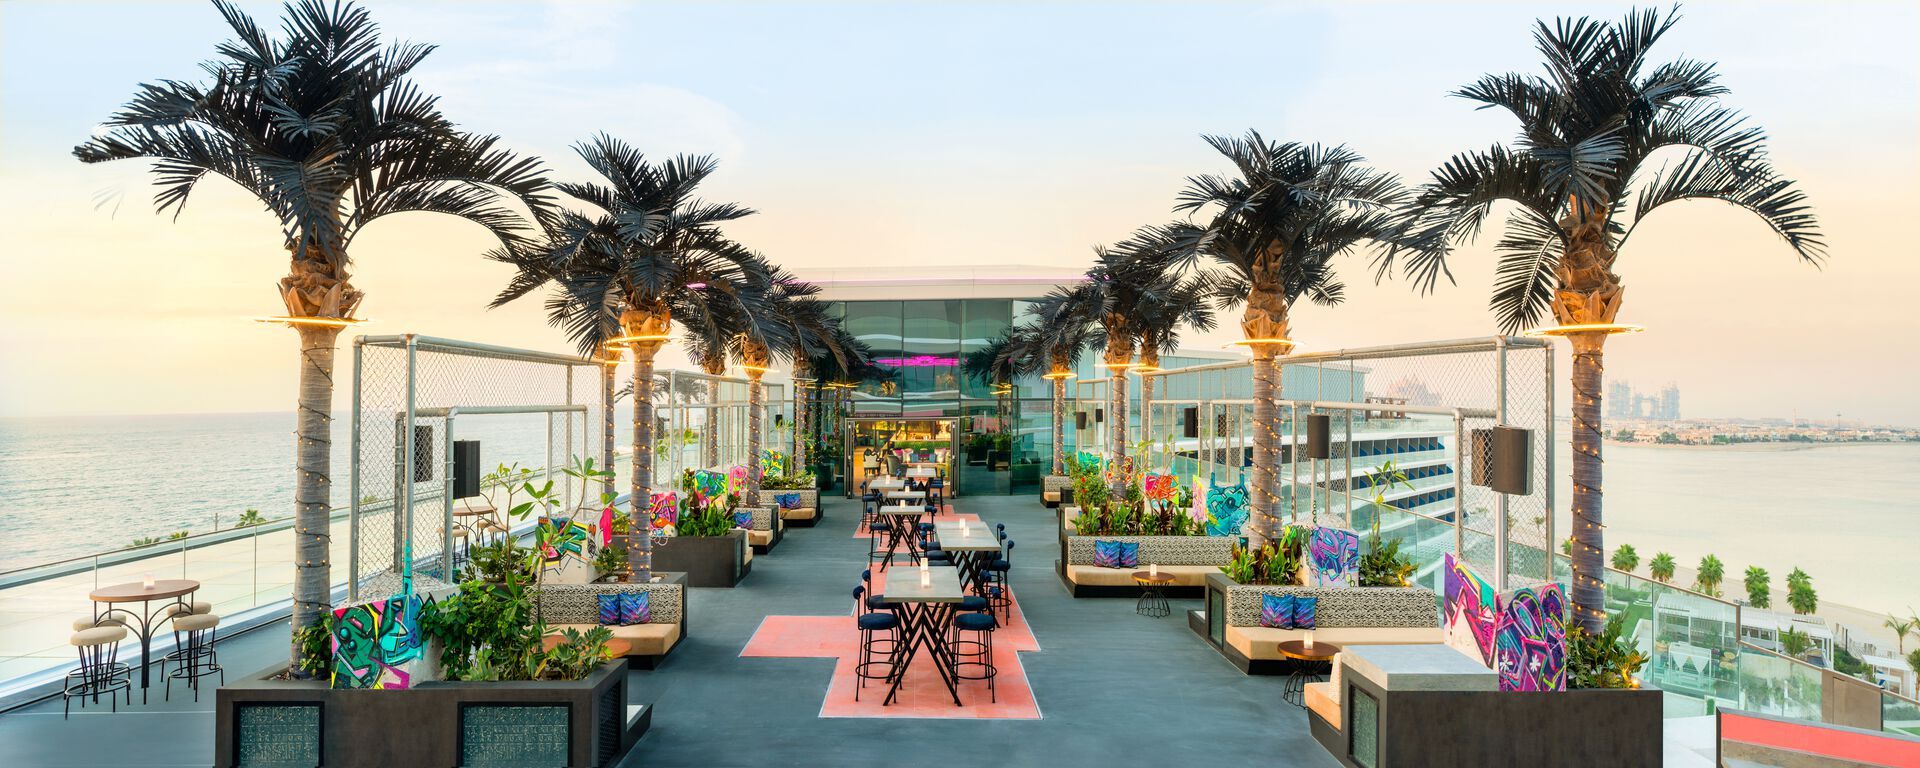 Emirats Arabes Unis - Dubaï - Hôtel W Dubai - The Palm 5*